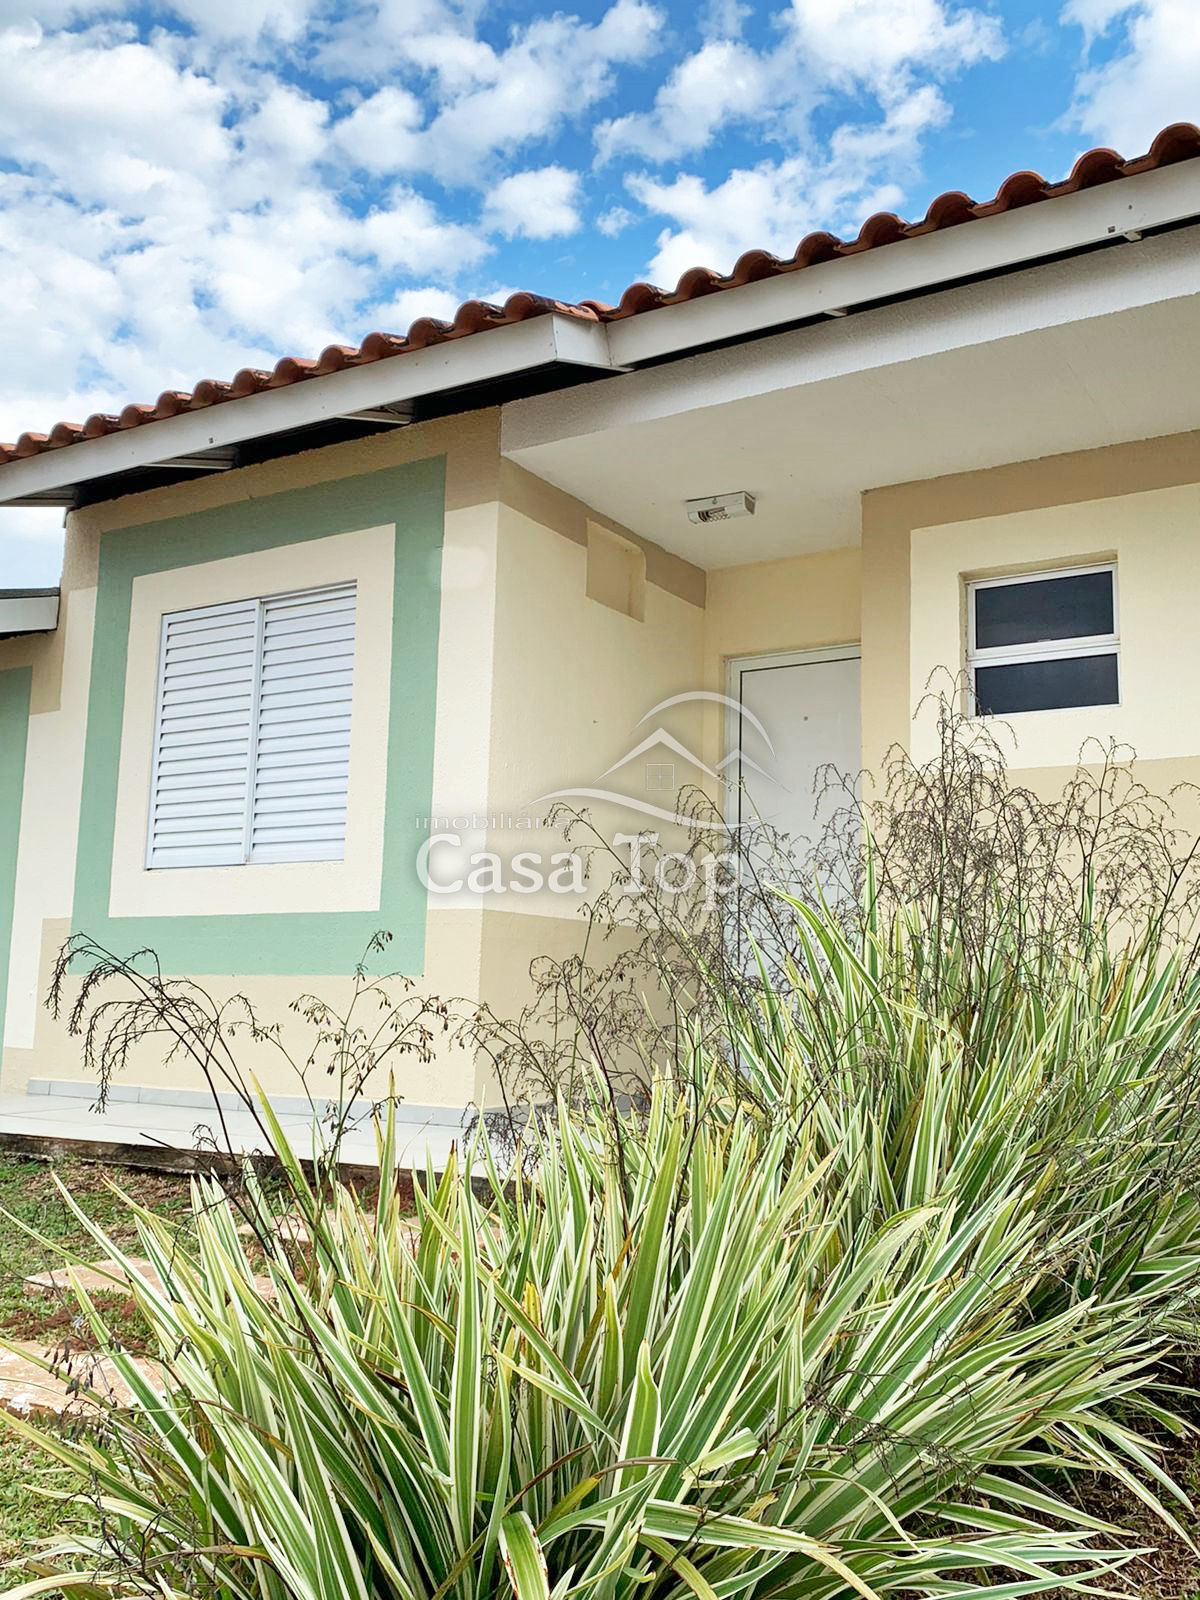 Casa semimobiliada para alugar Condomínio Residencial Moradas - Boa Vista  (em negociação)